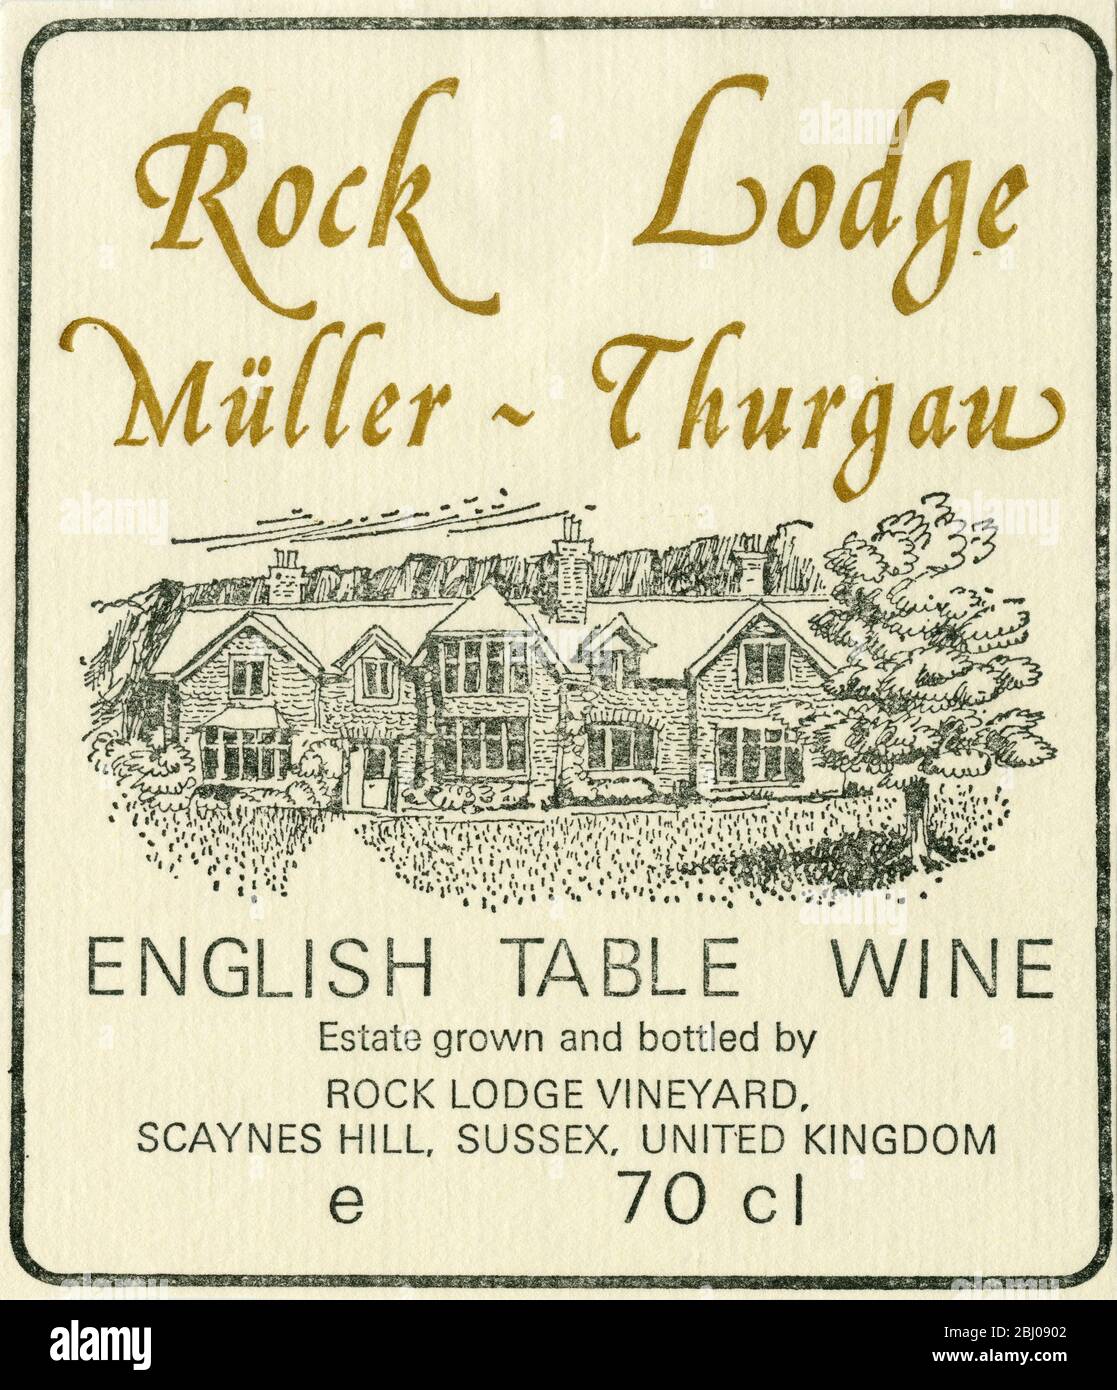 Etichetta del vino - Rock Lodge vino da tavola inglese. Una varietà di vite Muller Thurgan, coltivata e imbottigliata da Rol Lodge Vineyard, Sussex. Foto Stock